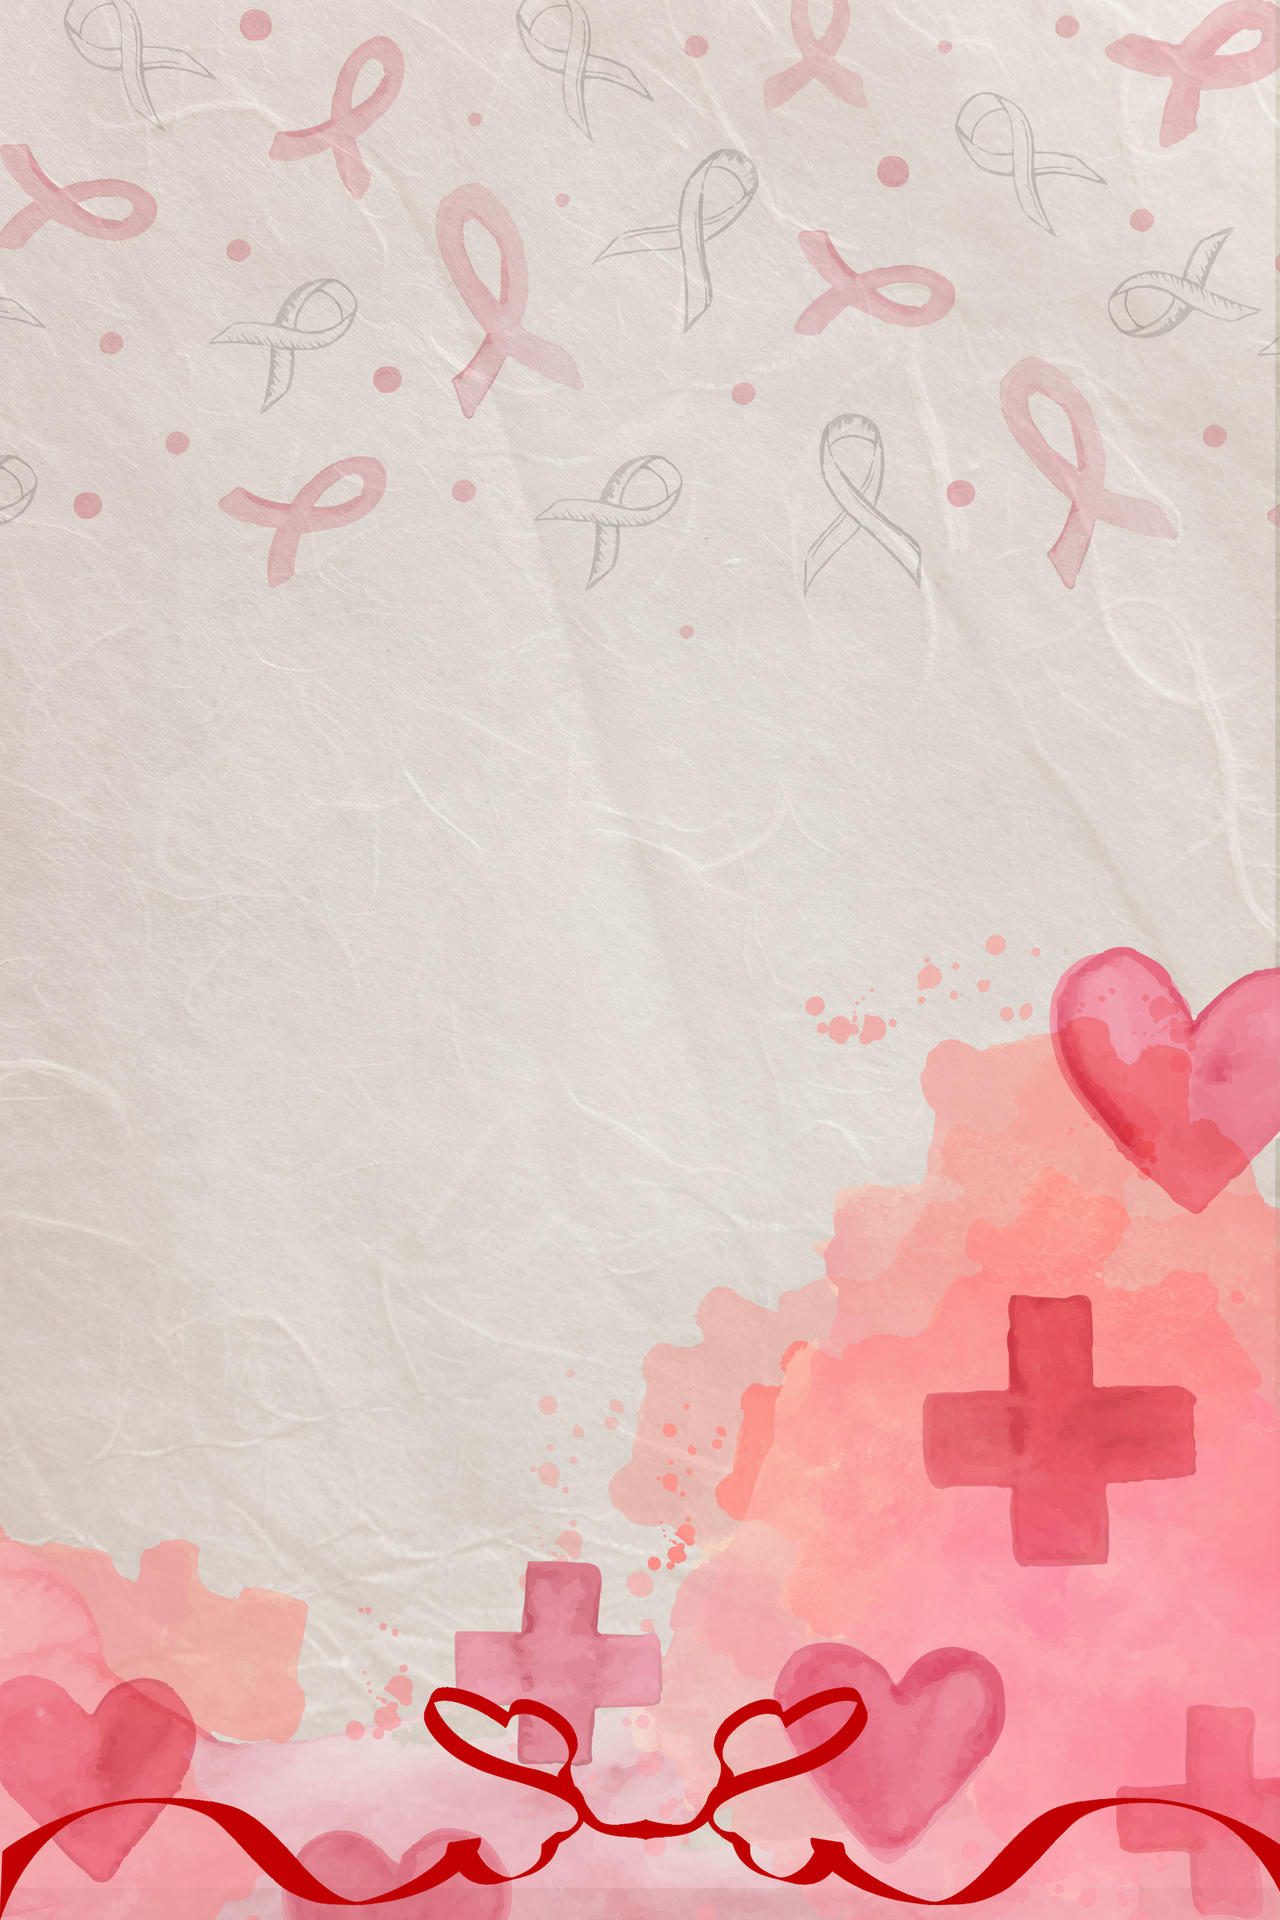 简约手绘红丝带插画世界艾滋病背景素材